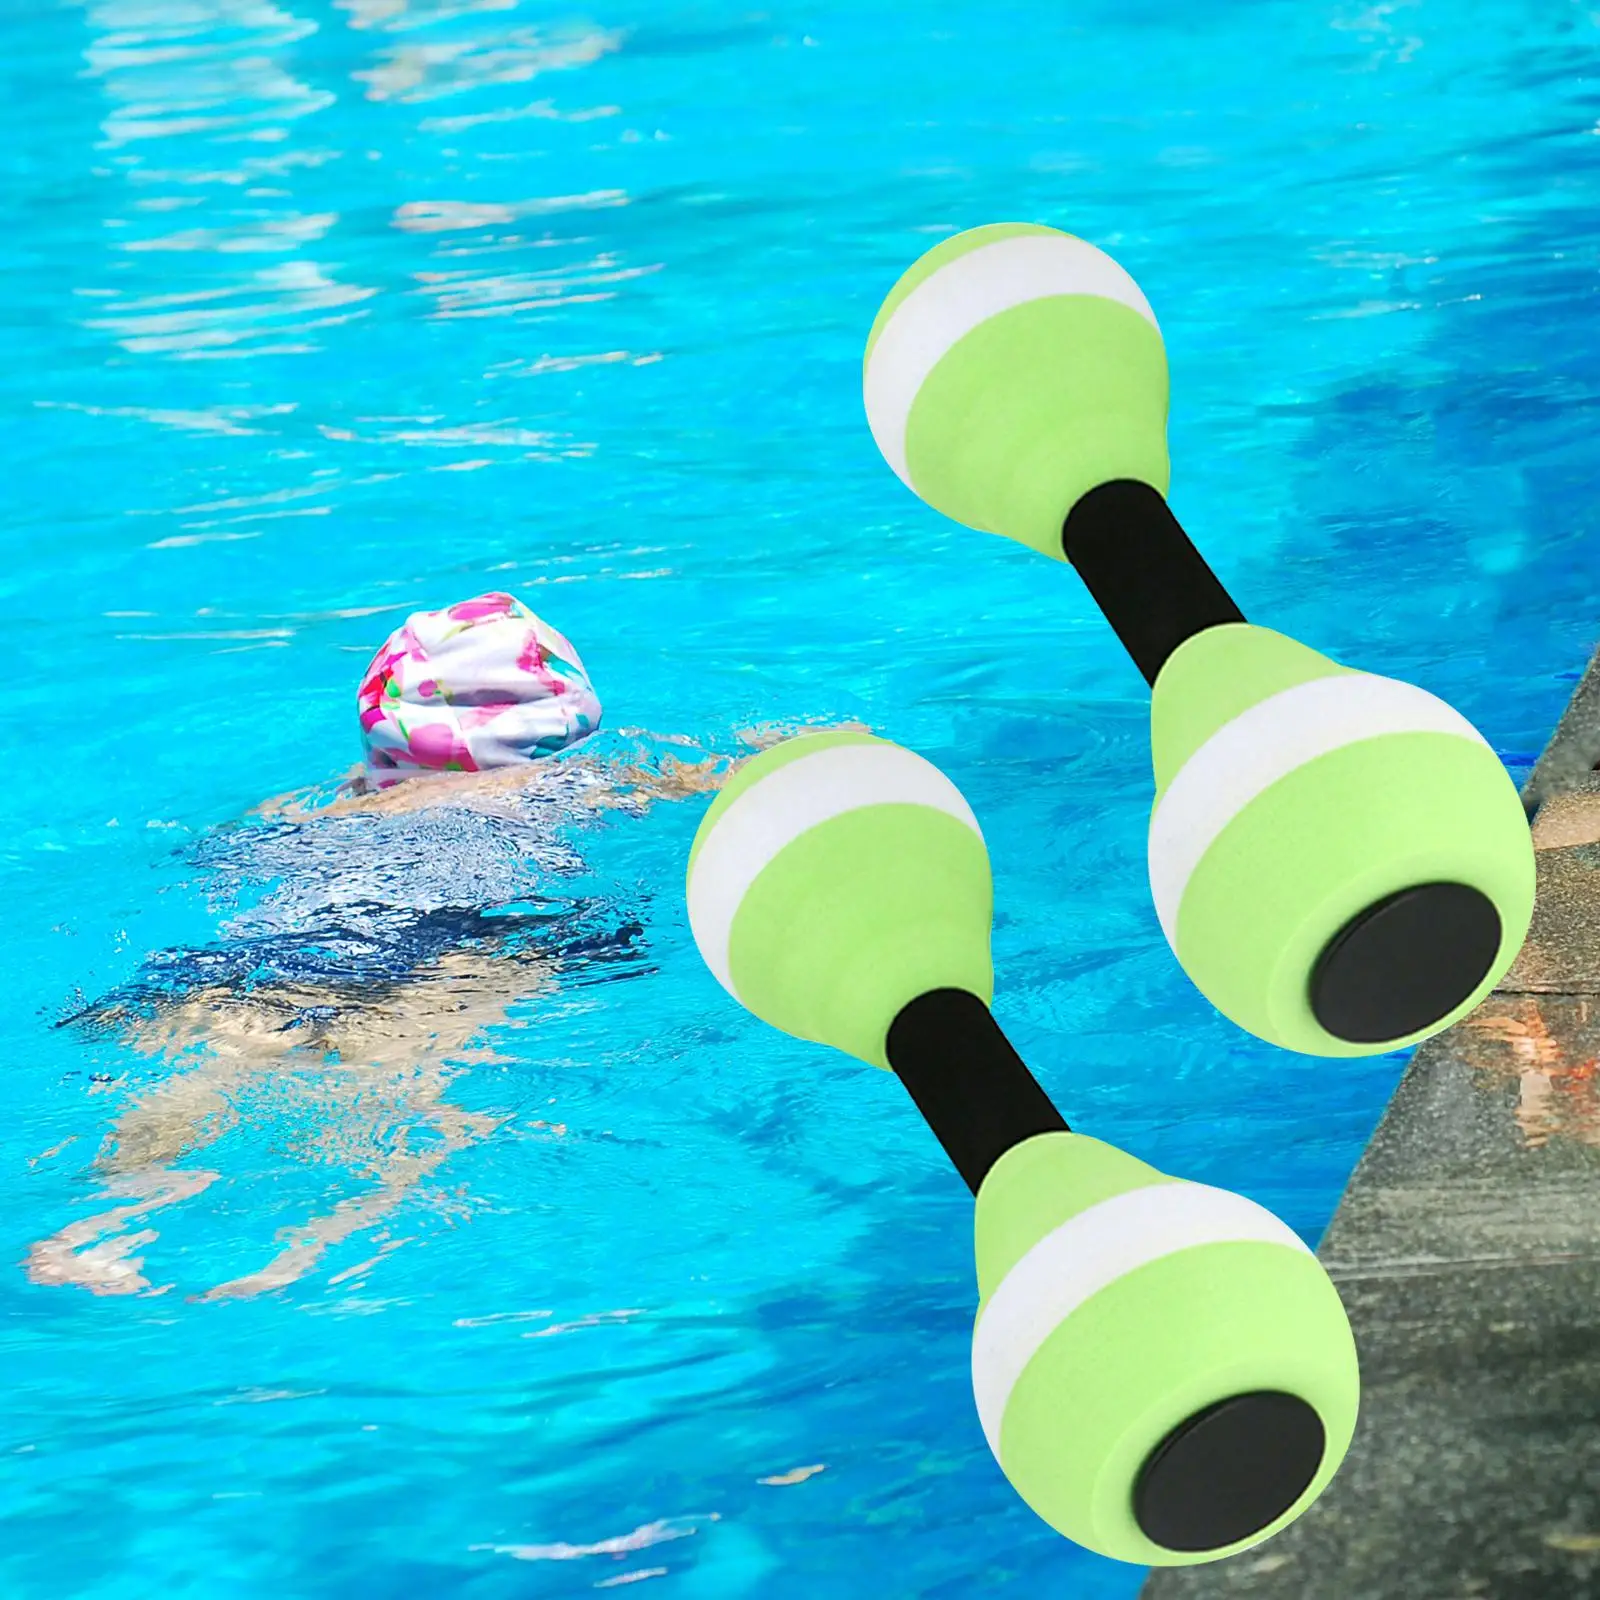 Aquatic dumbbells, water aerobics dumbbell pool resistance, hand bars